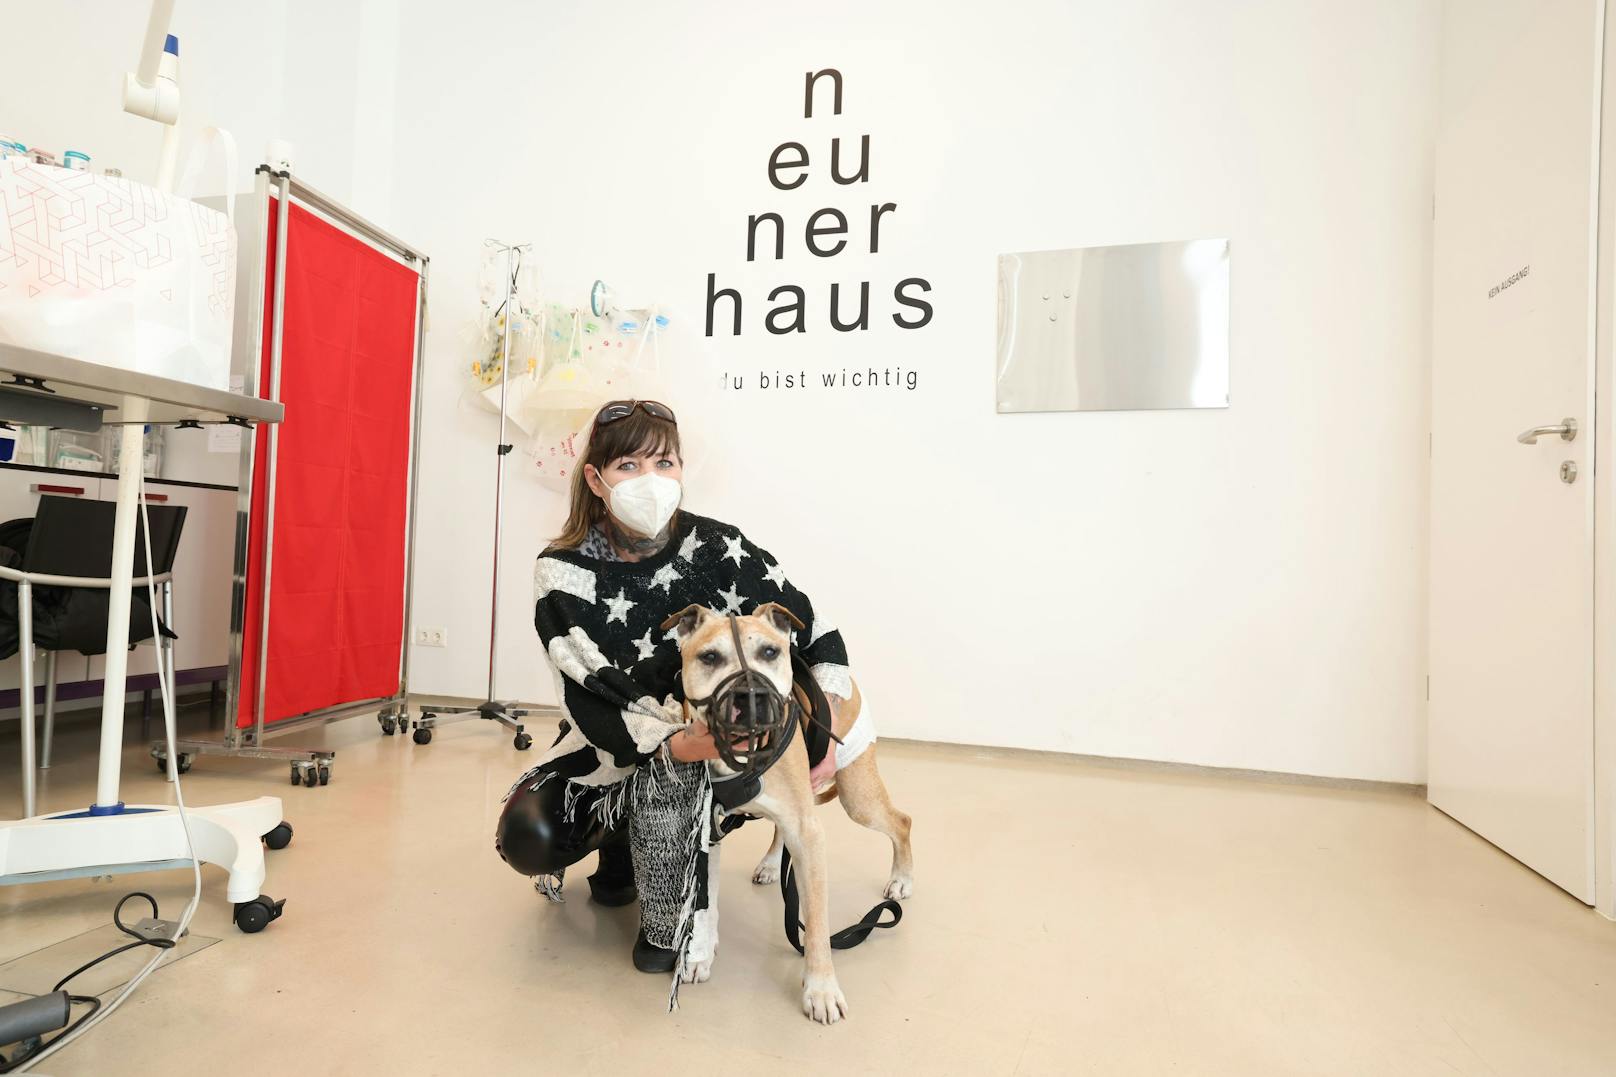 Caro (47) mit ihrem Hundeopi Tyson. Sie kommt regelmäßig in die Tierarztpraxis neunerhaus, denn Tyson ist todkrank.